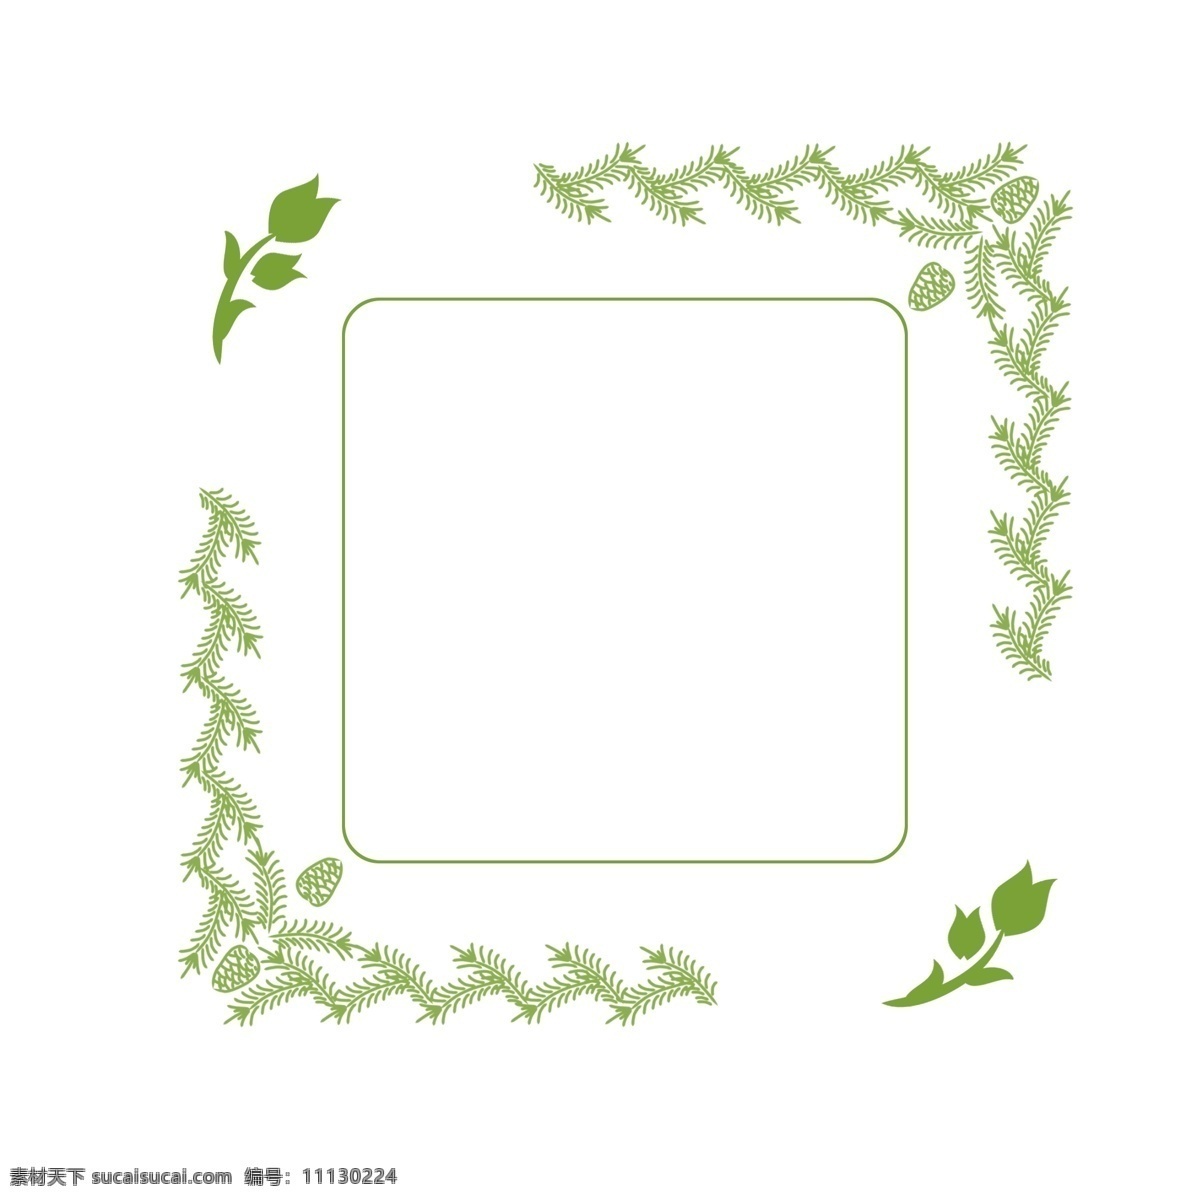 森林 系 花草 绿色 清新 二维码 边框 梦幻边框 复古 浅绿色 边框设计 森林系 小清新边框 自然